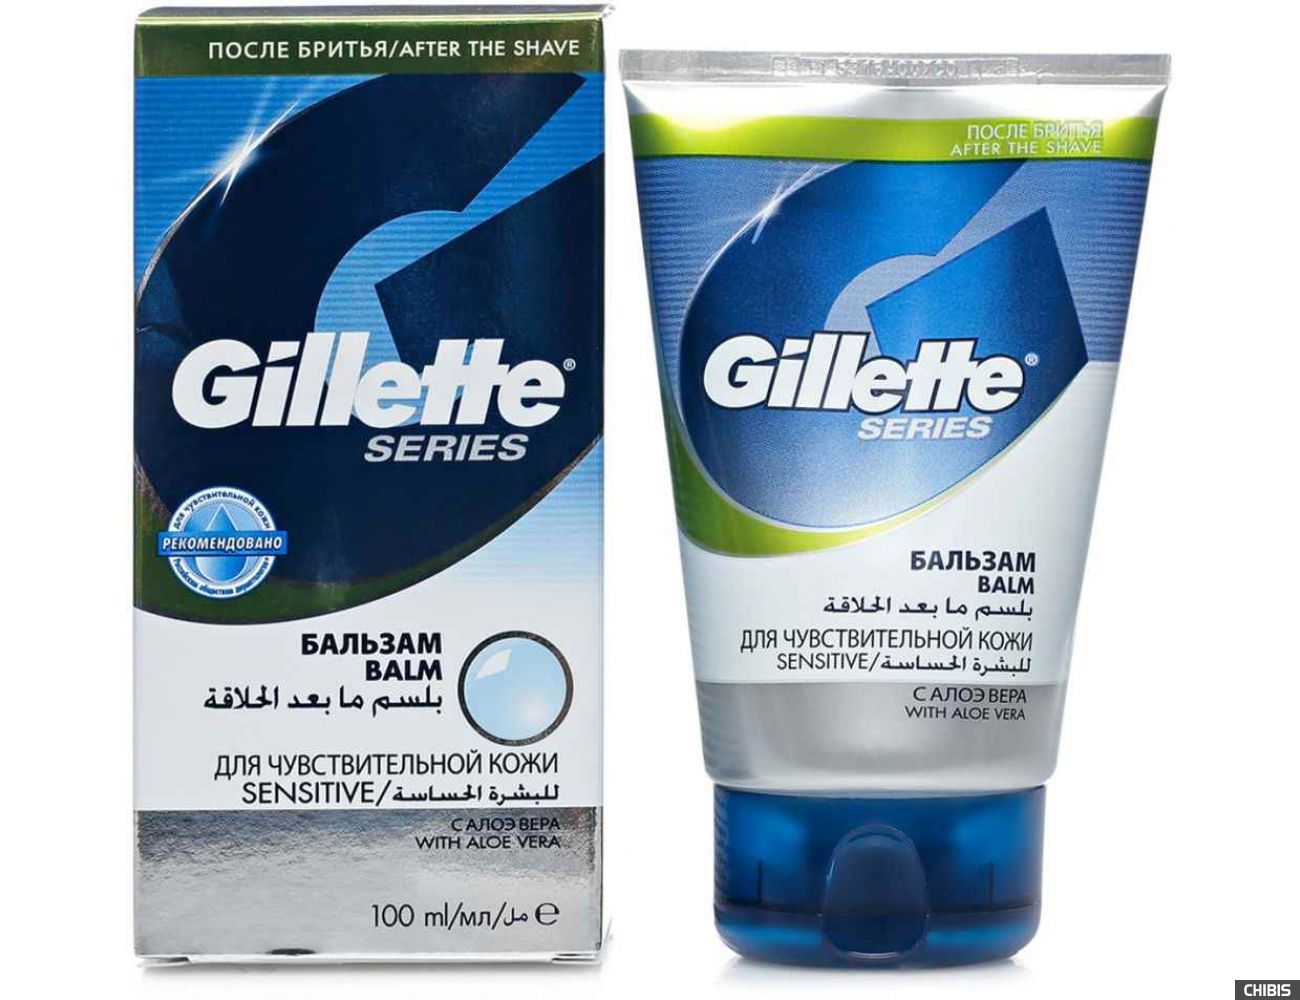 Бальзам после бритья Gillette Series Sensitive